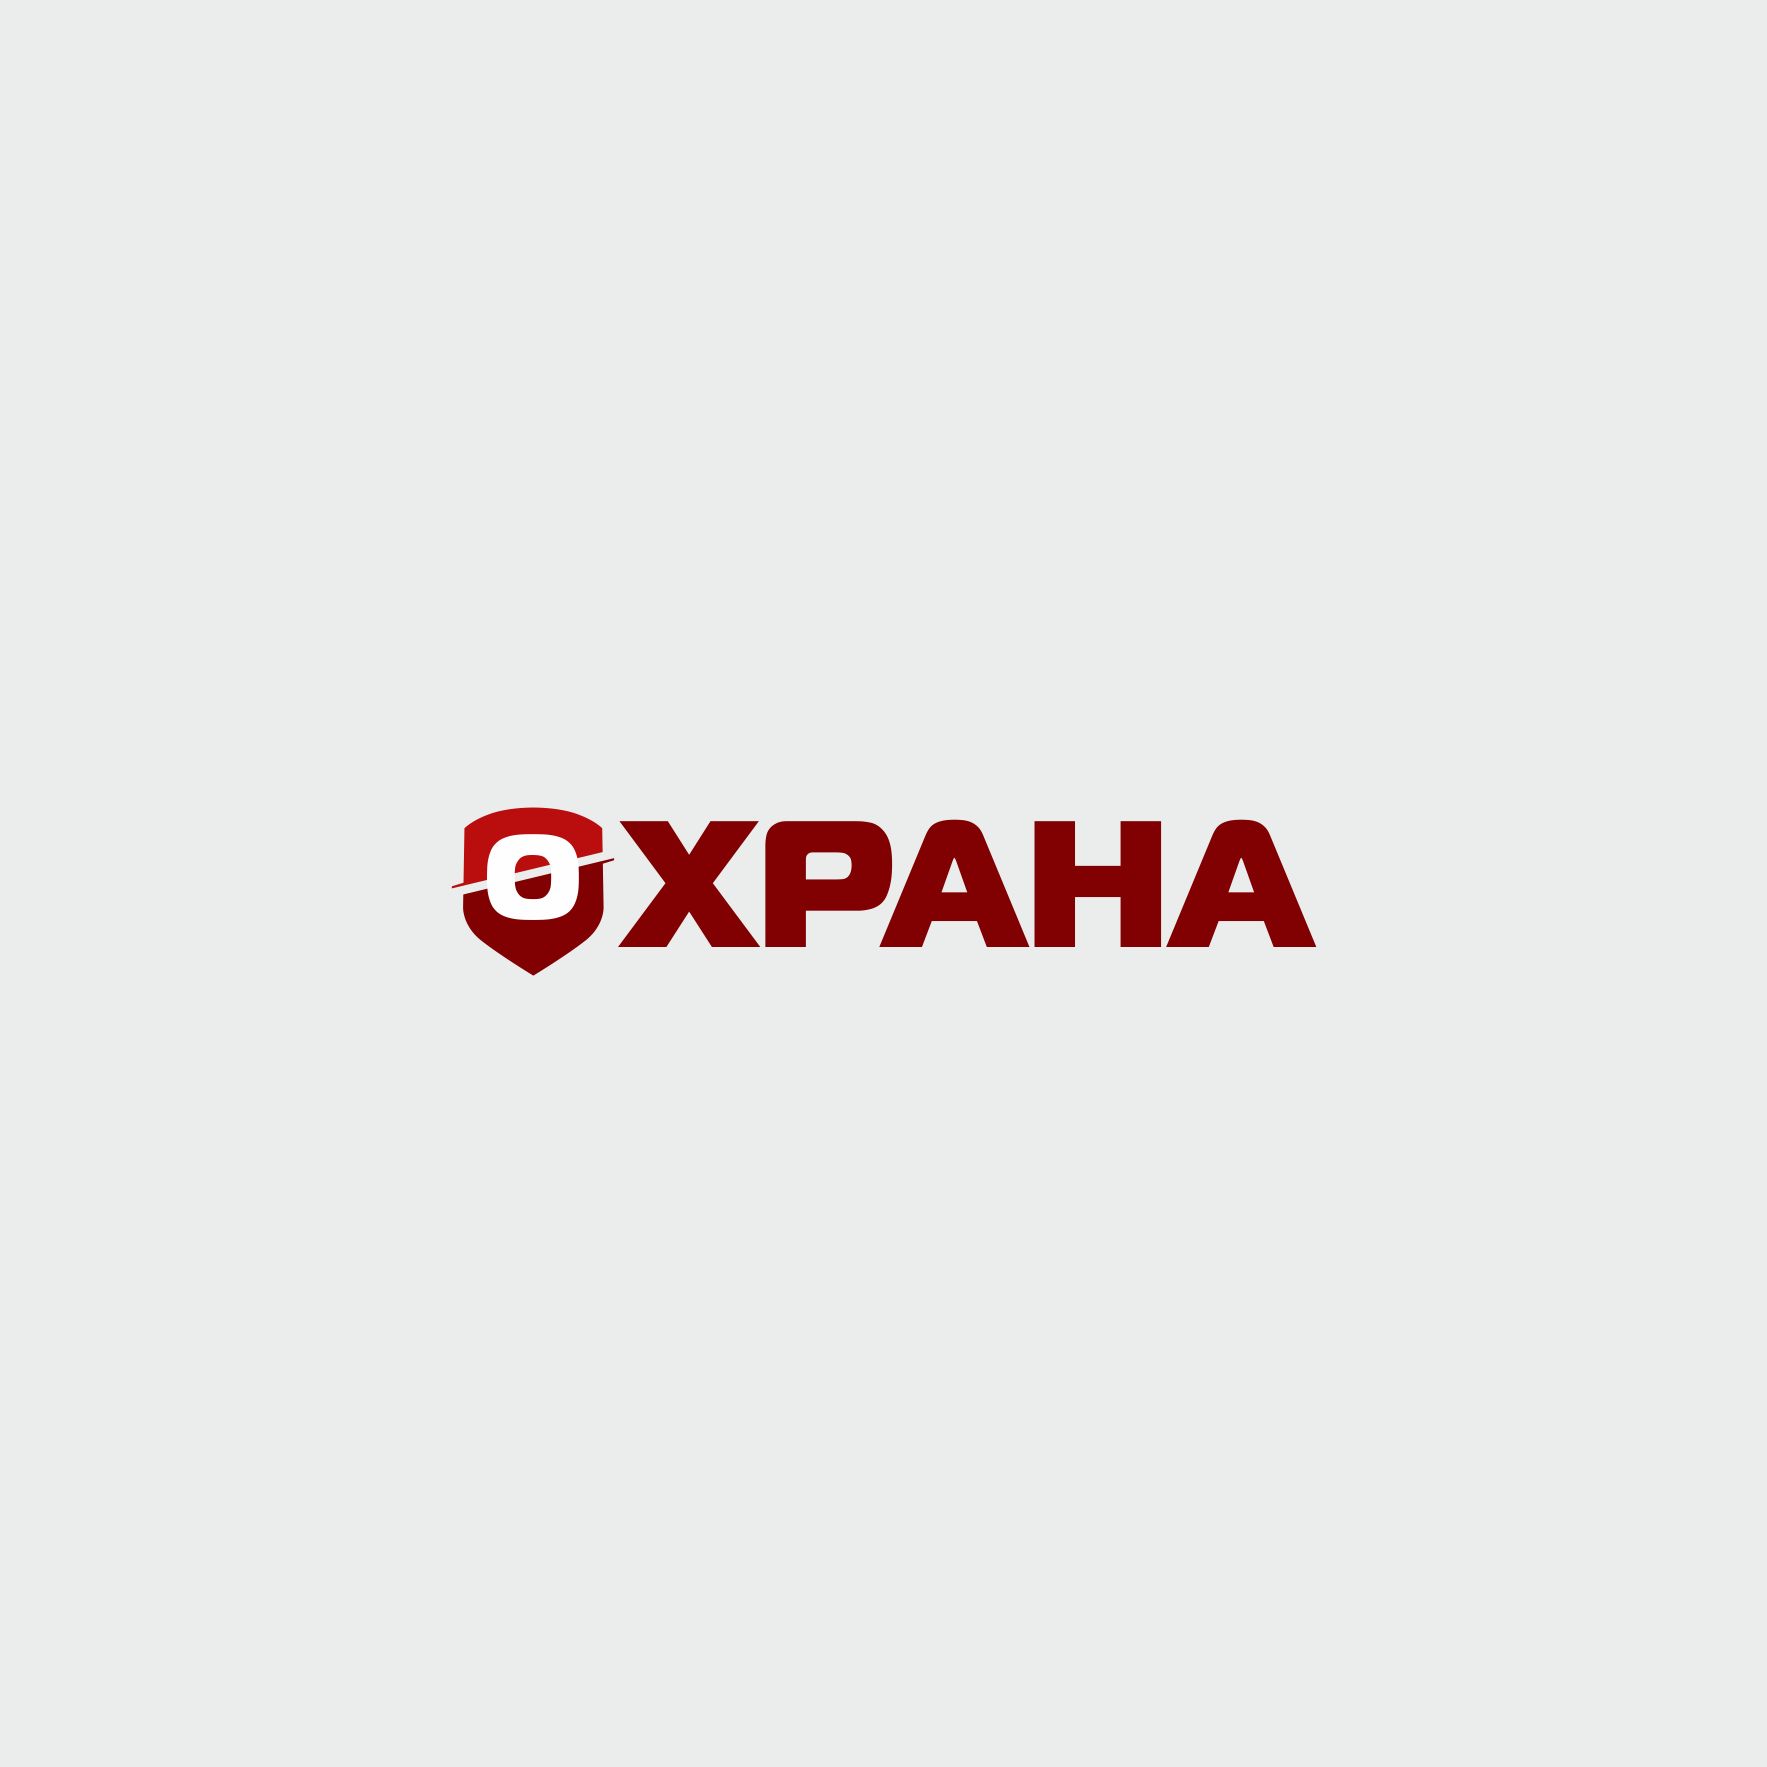 Логотип для группа компаний ОХРАНА - дизайнер ilim1973